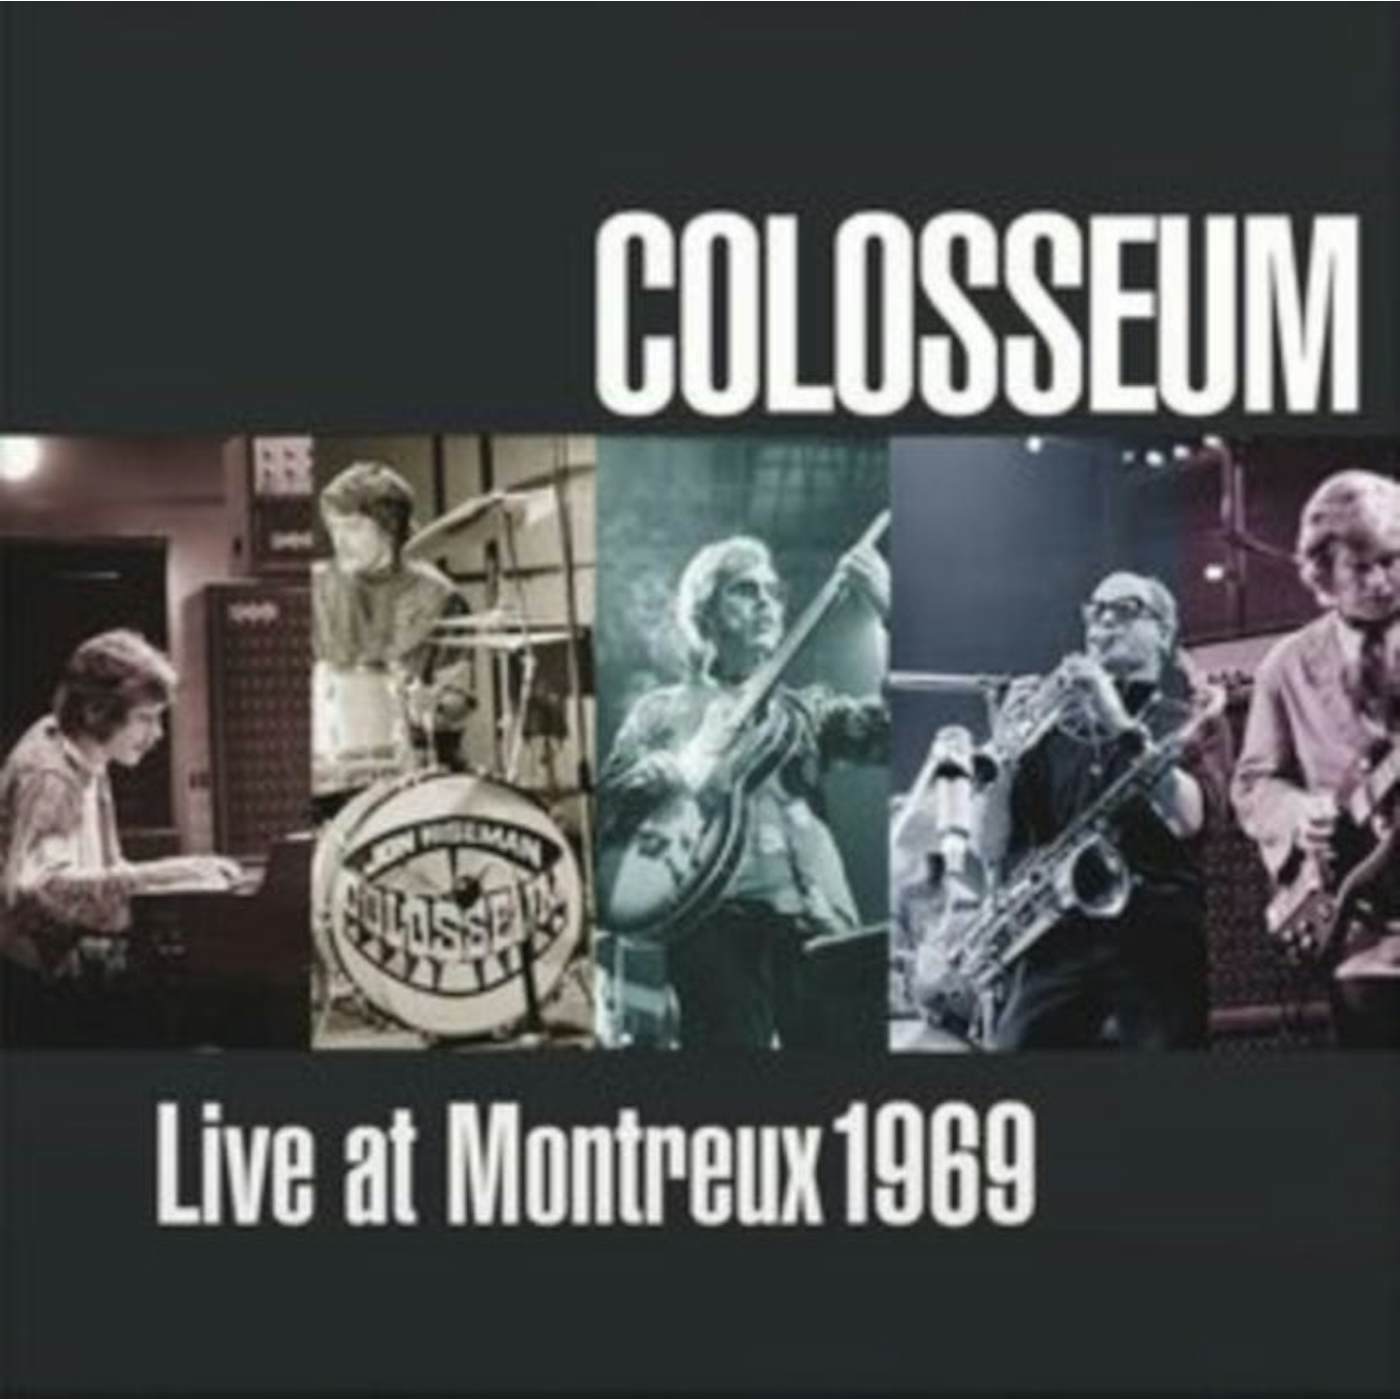 Colosseum LP - Live At Montreux 1969 (Vinyl)